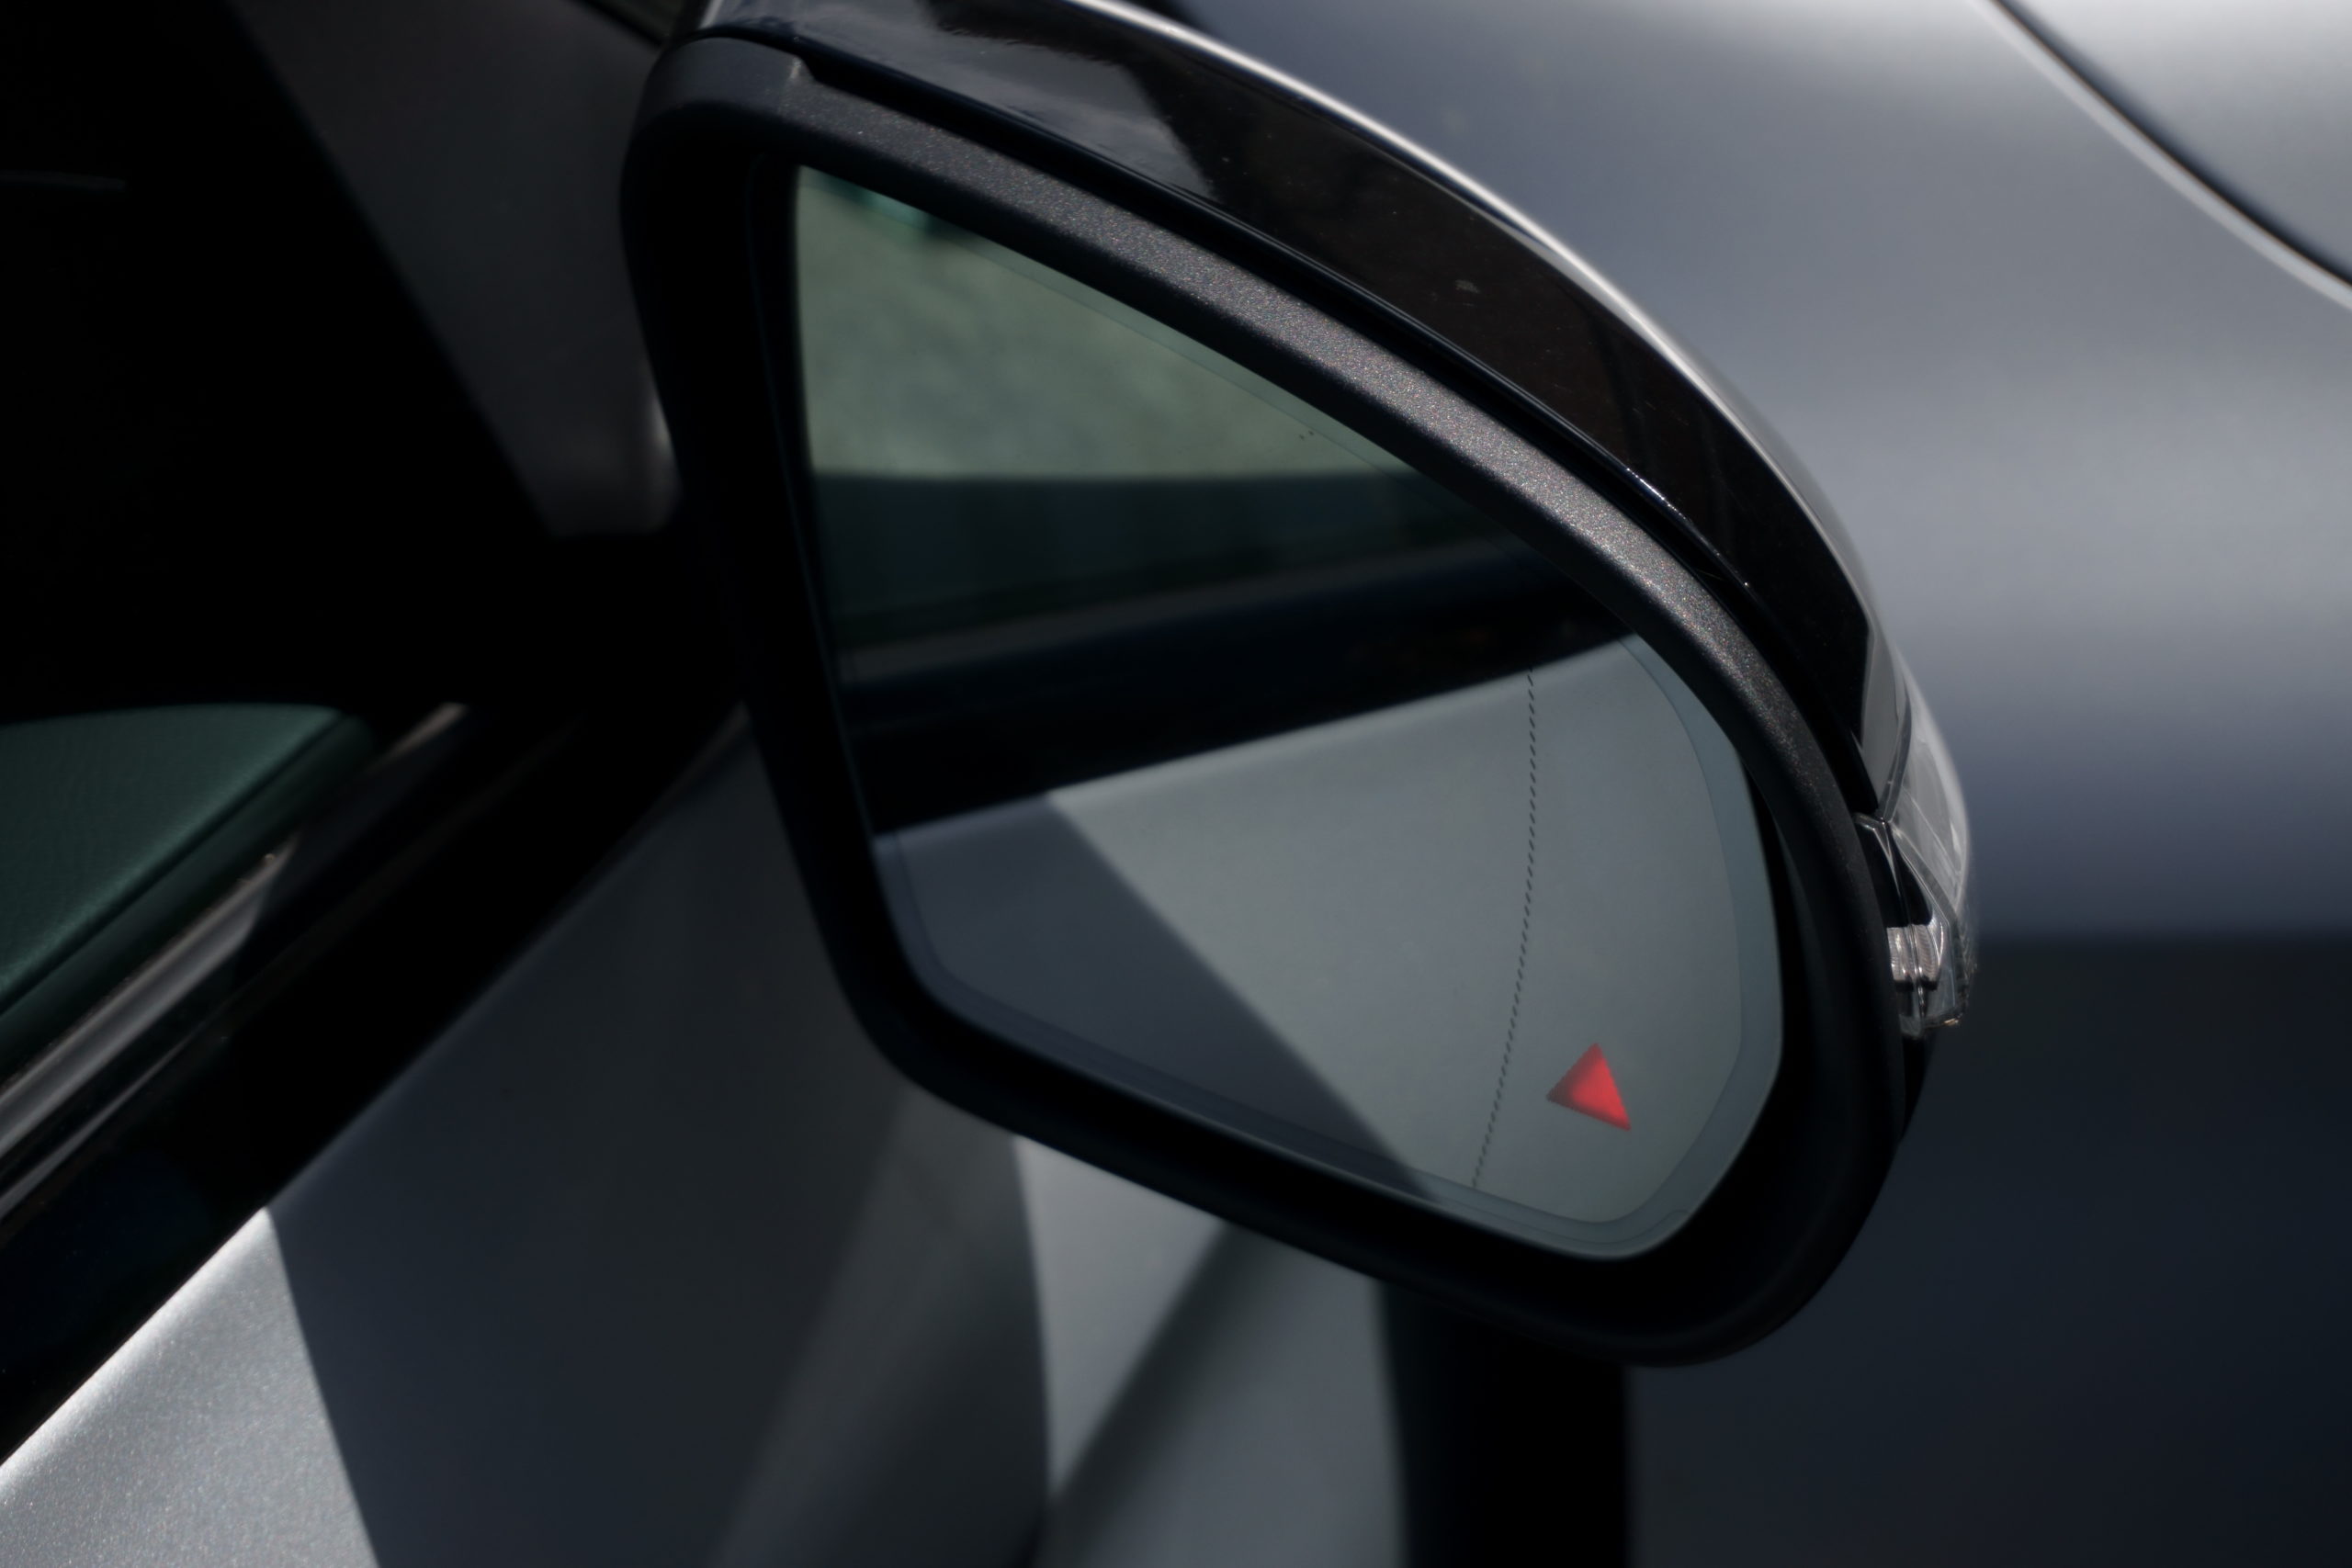 Car door mirror with illuminated blind spot monitoring light warning.